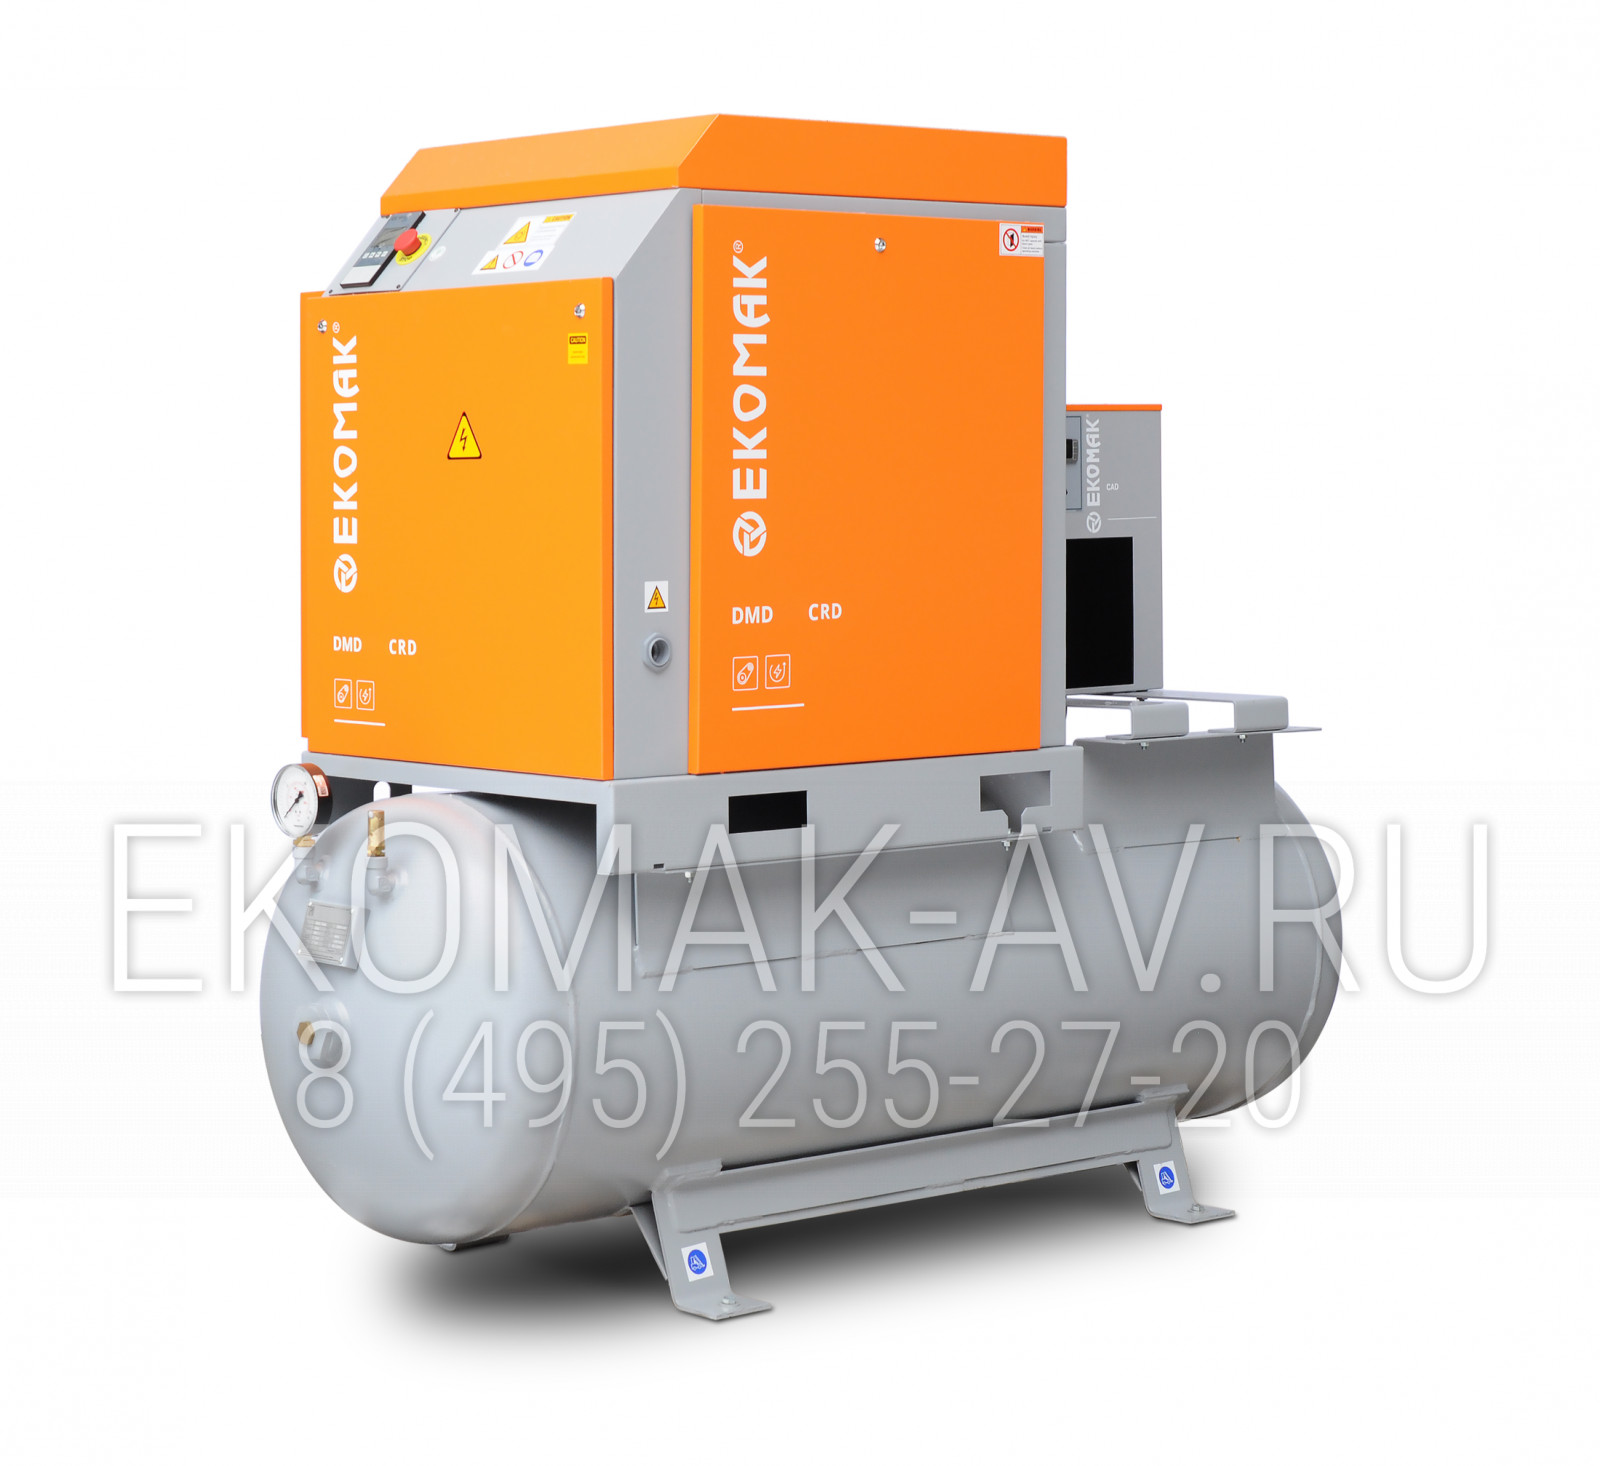 Винтовой компрессор Ekomak DMD 100 CRD 8 LF G+C 500L